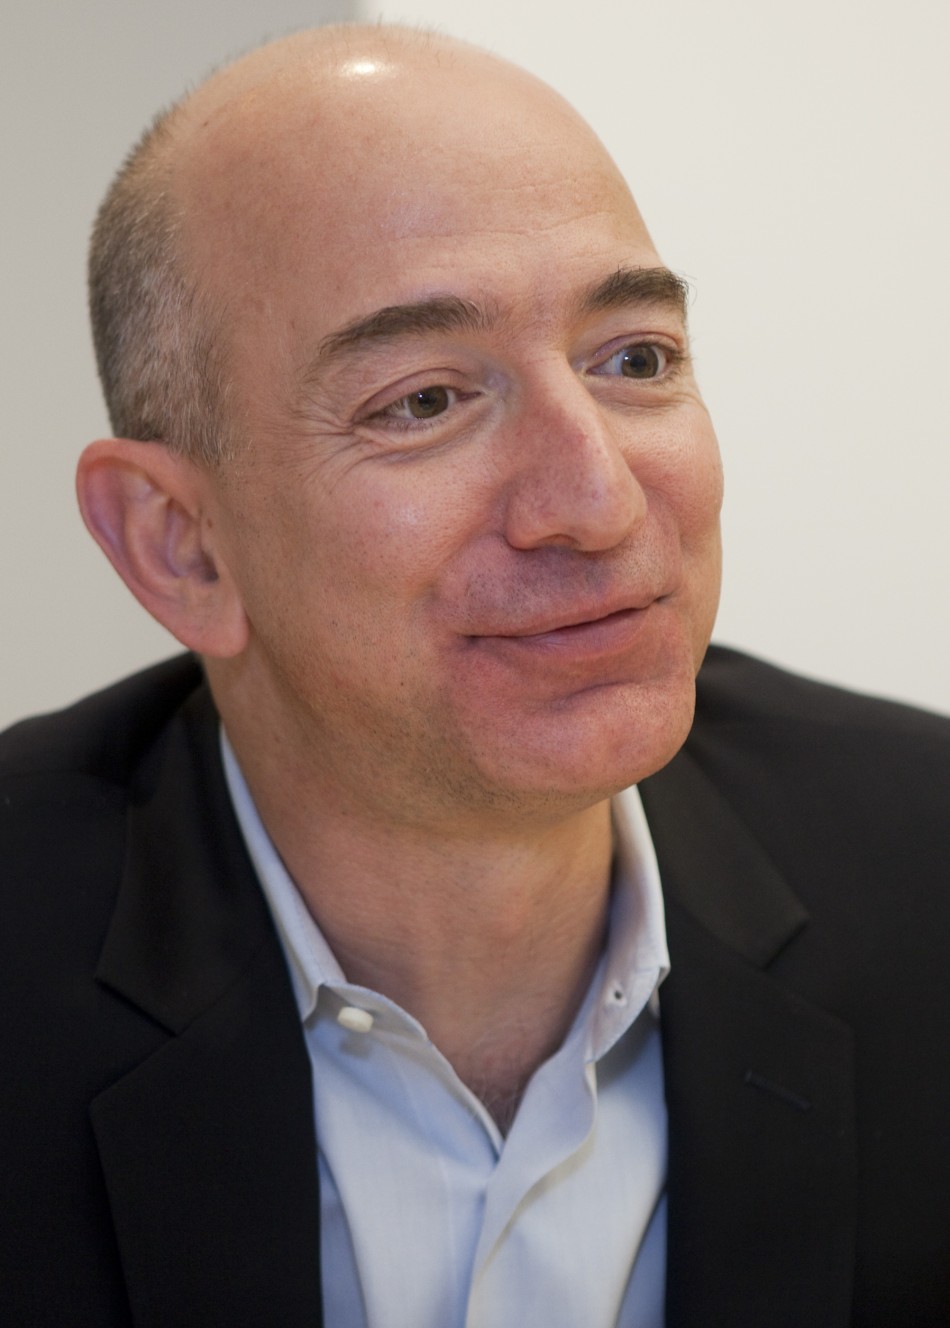 زندگینامه Jeff Bezos - بنیان گذار Amazon